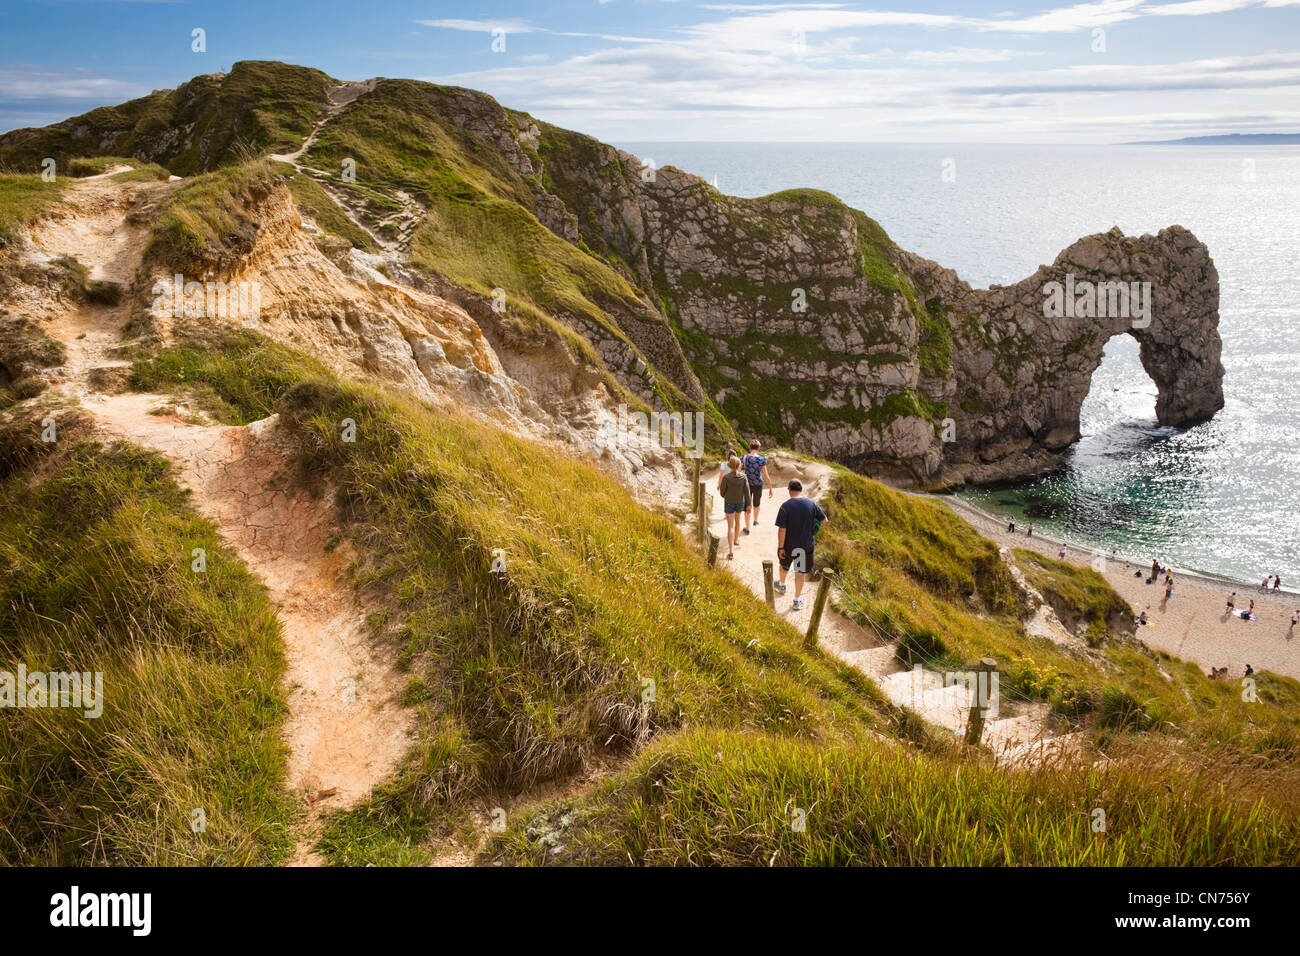 Vista de la puerta de Durdle sobre la Costa Jurásica, costa de Dorset, Inglaterra, Reino Unido - con los turistas que caminan hacia la playa en verano Foto de stock